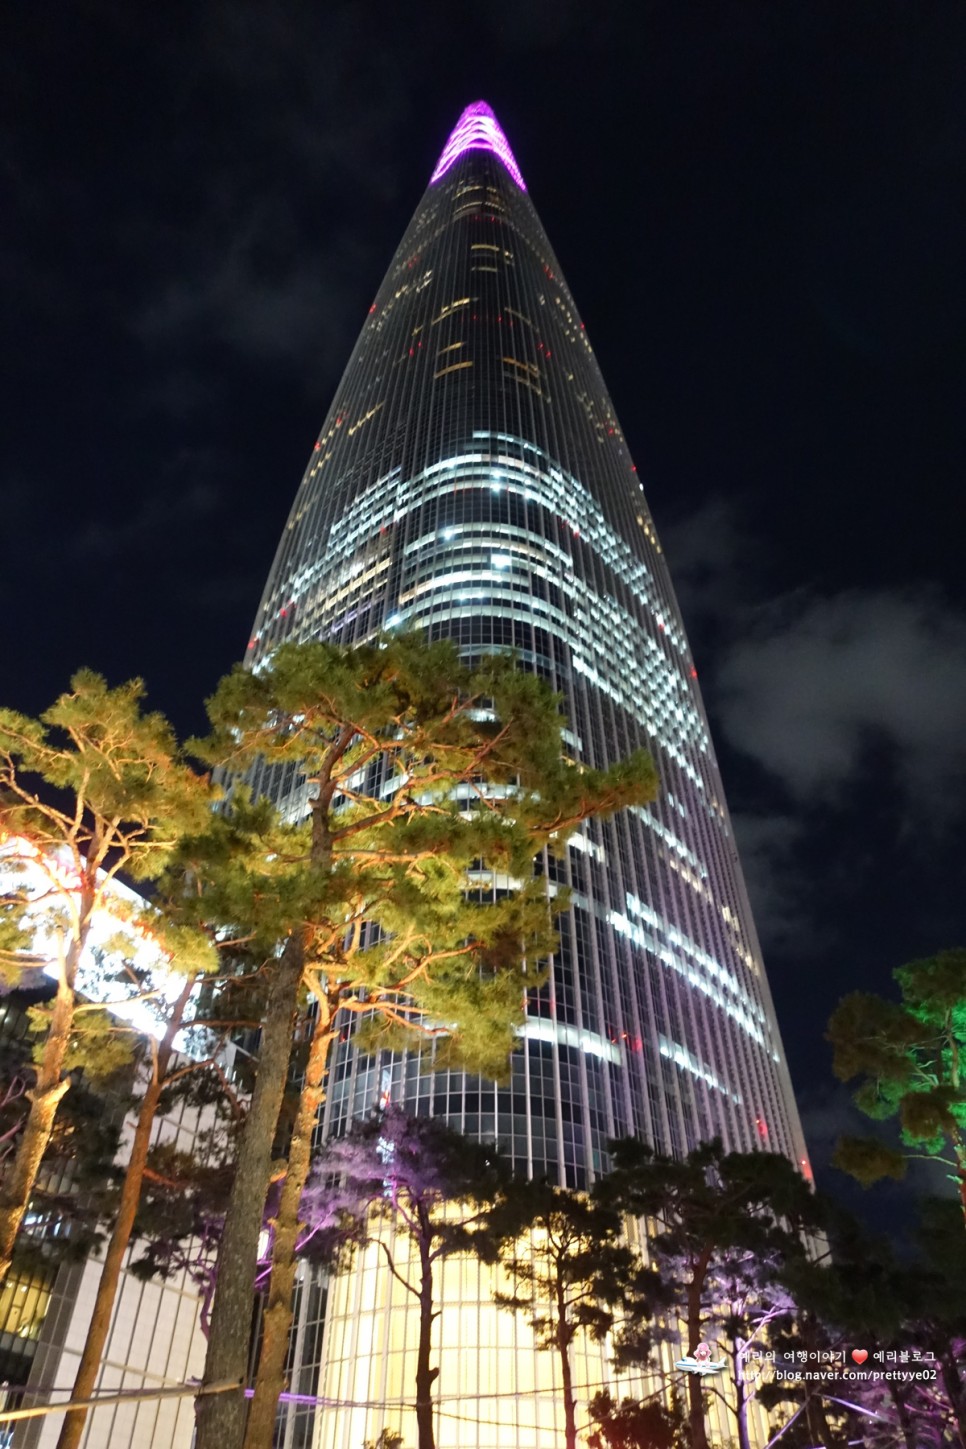 서울가볼만한곳 서울스카이 123층 롯데월드타워 전망대